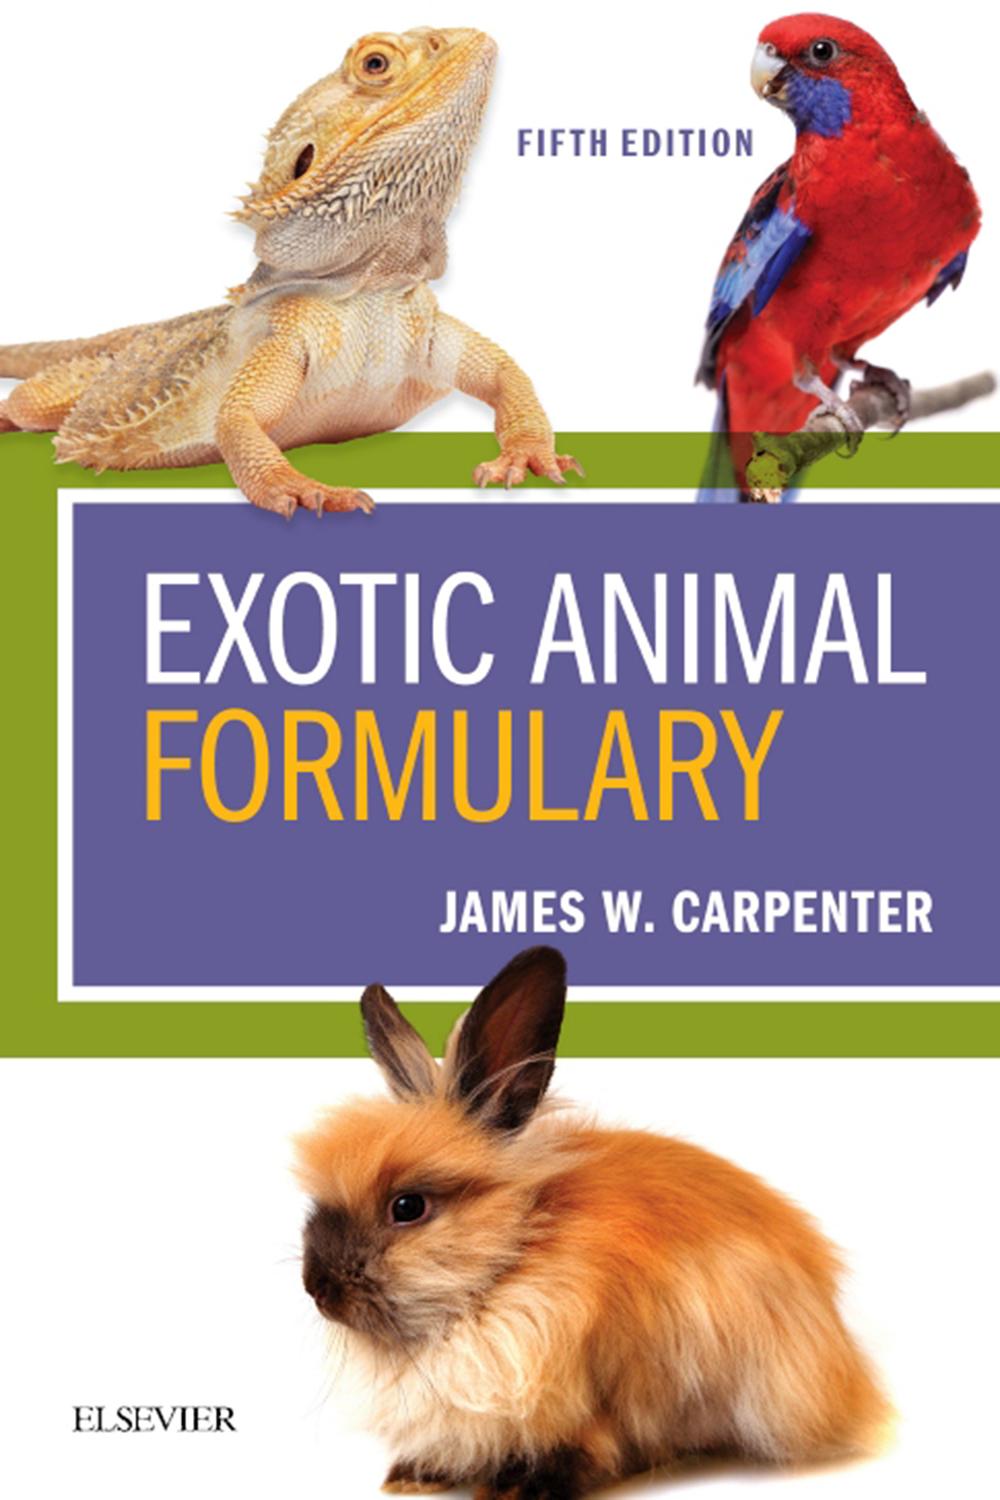 exotic animal formulary pdf download